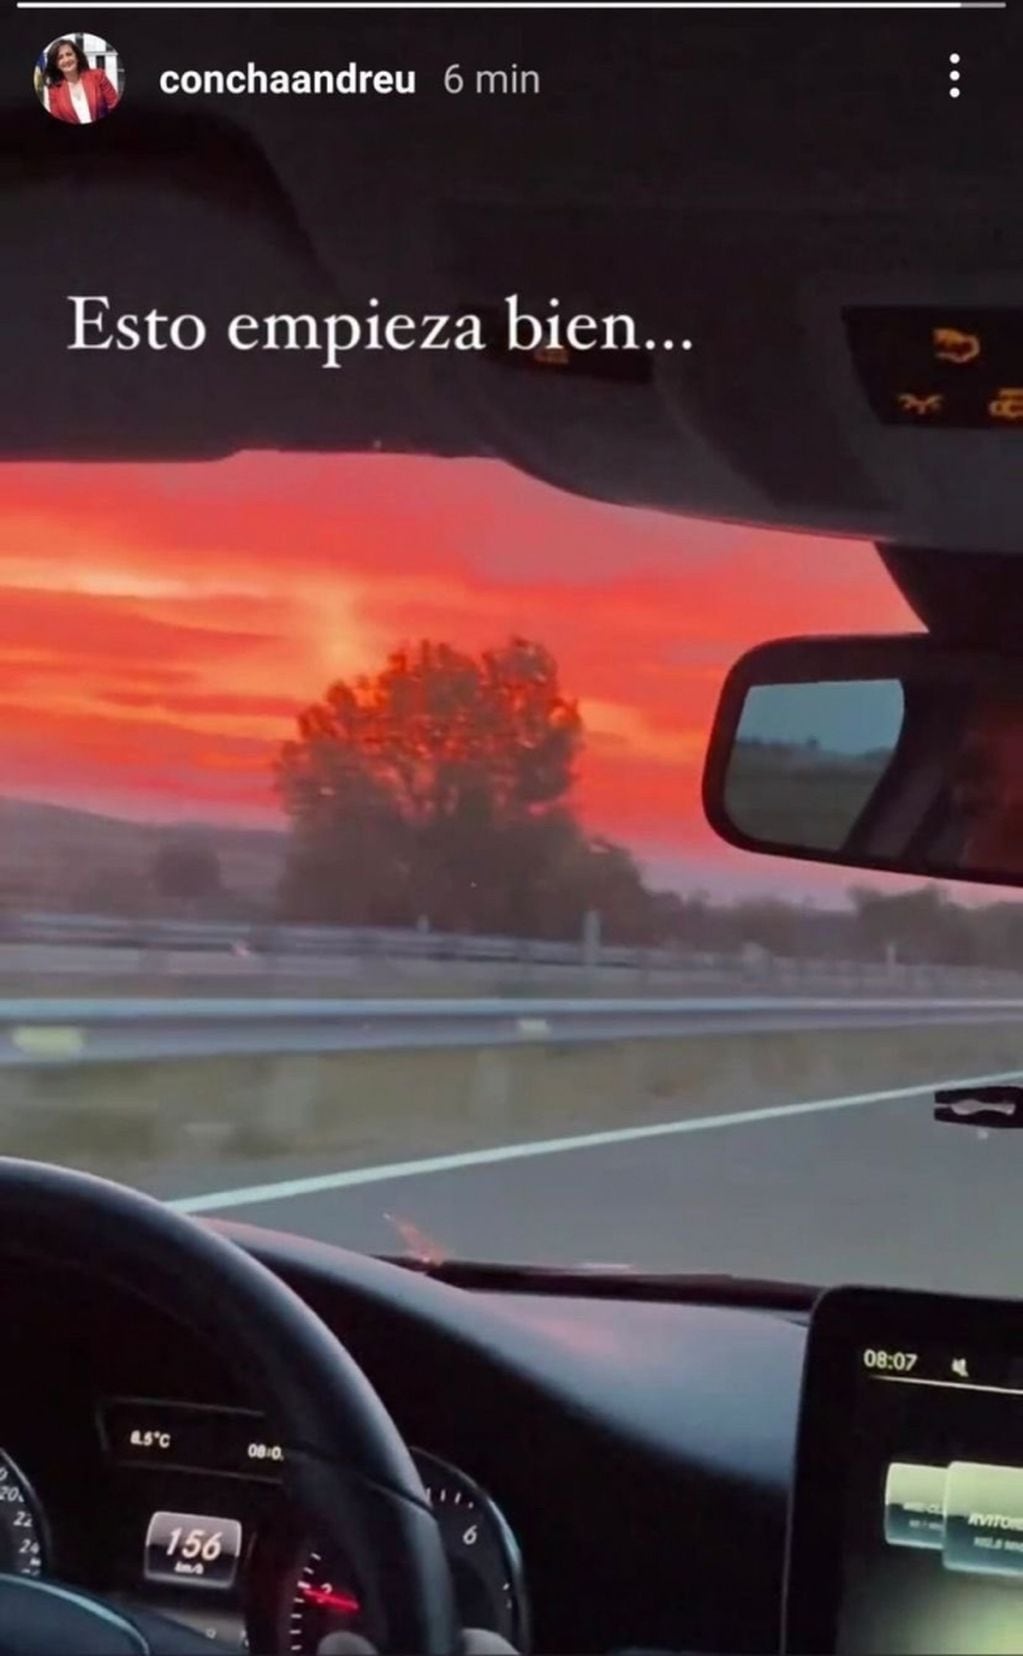 La presidenta de Rioja, España, compartió una imagen en las historias de Instagram y despertó polémica.